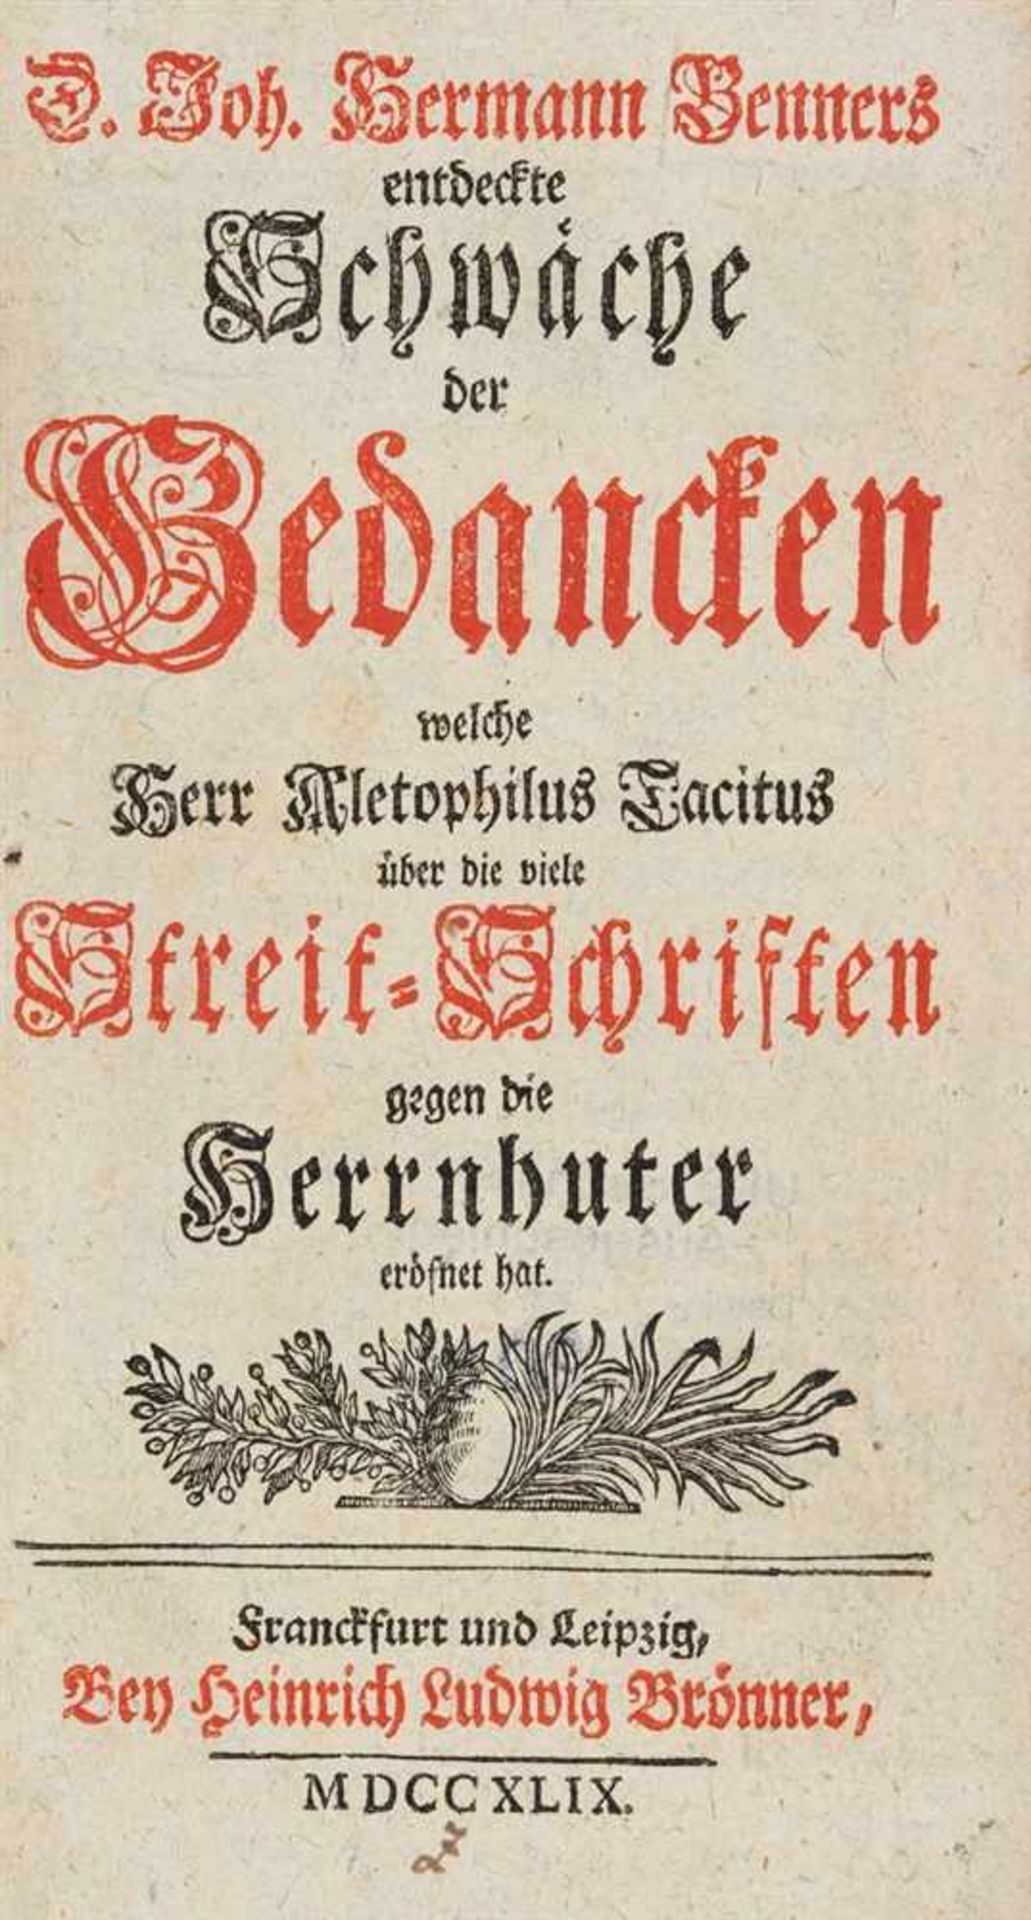 Benner, Johann Hermann: Entdeckte Schwäche der Gedancken, welche Herr Aletophilus Tacitus über die